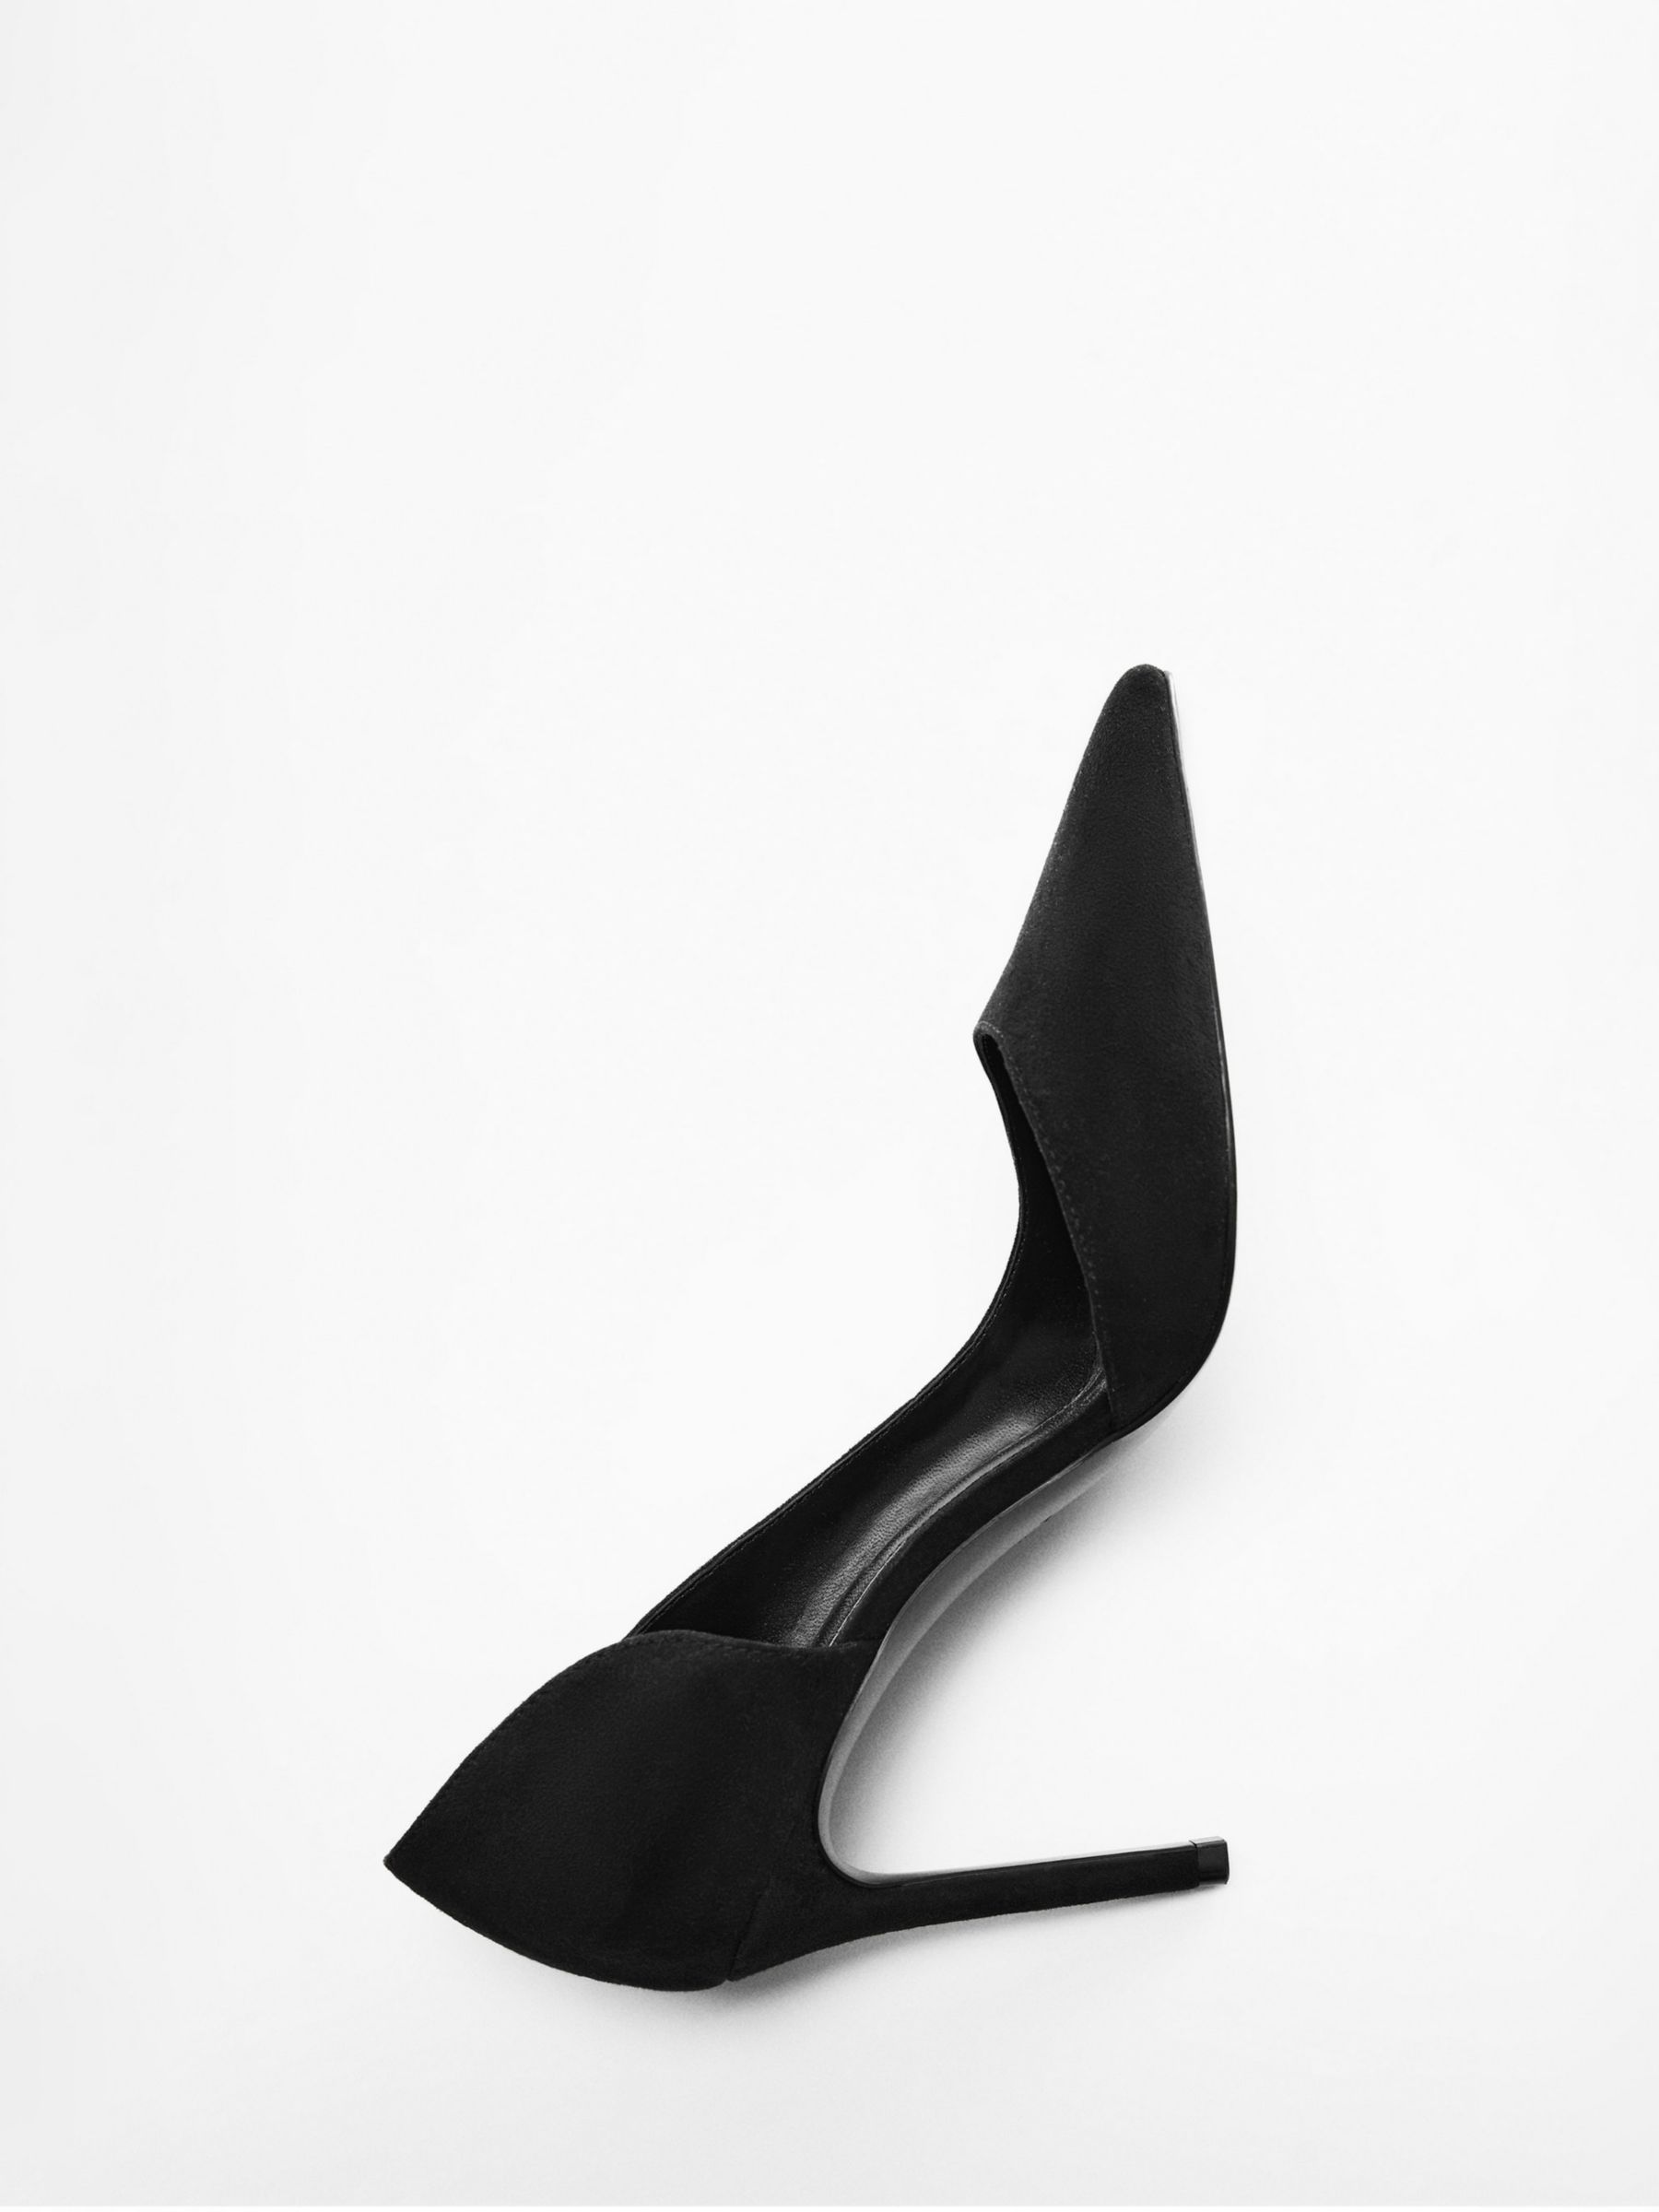 Mango Audrey Asymmetrical Court Shoes, Black, 2